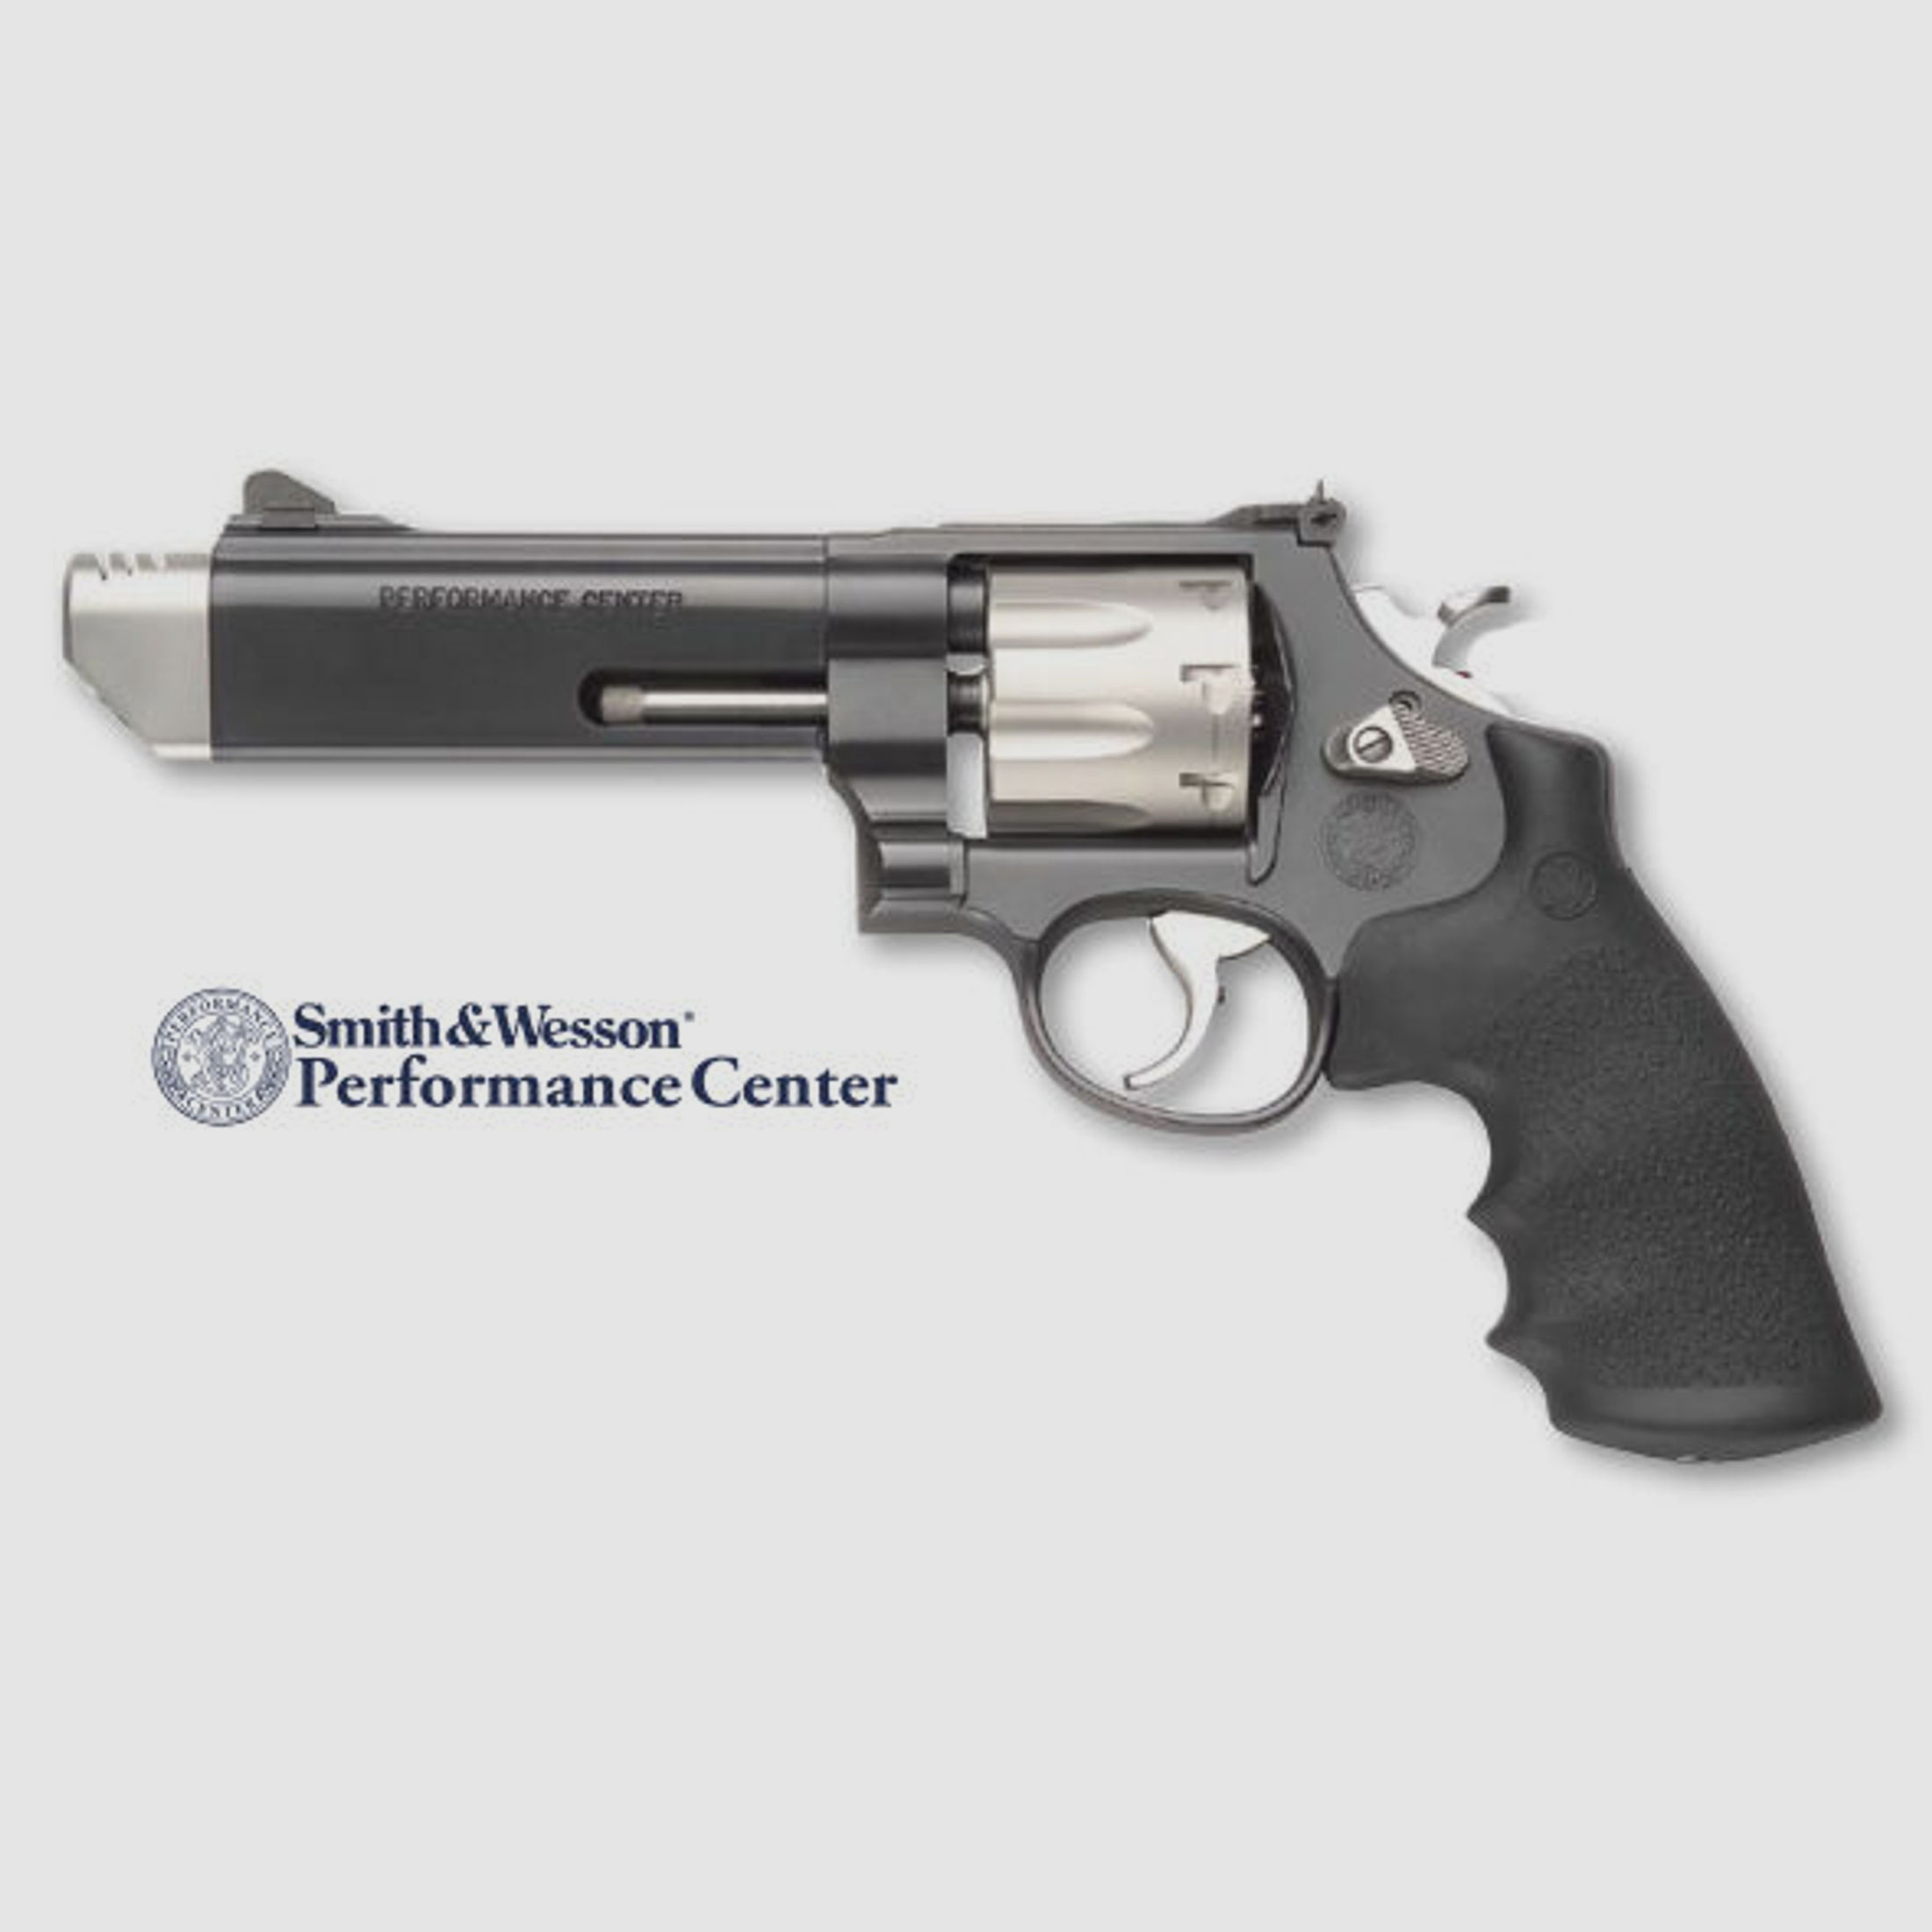 Smith & Wesson S & W Mod. 627 V-Comp Performance 357Magnum Revolver	 Smith & Wesson S & W Mod. 627 V-Comp Performance 357Magnum Revolver